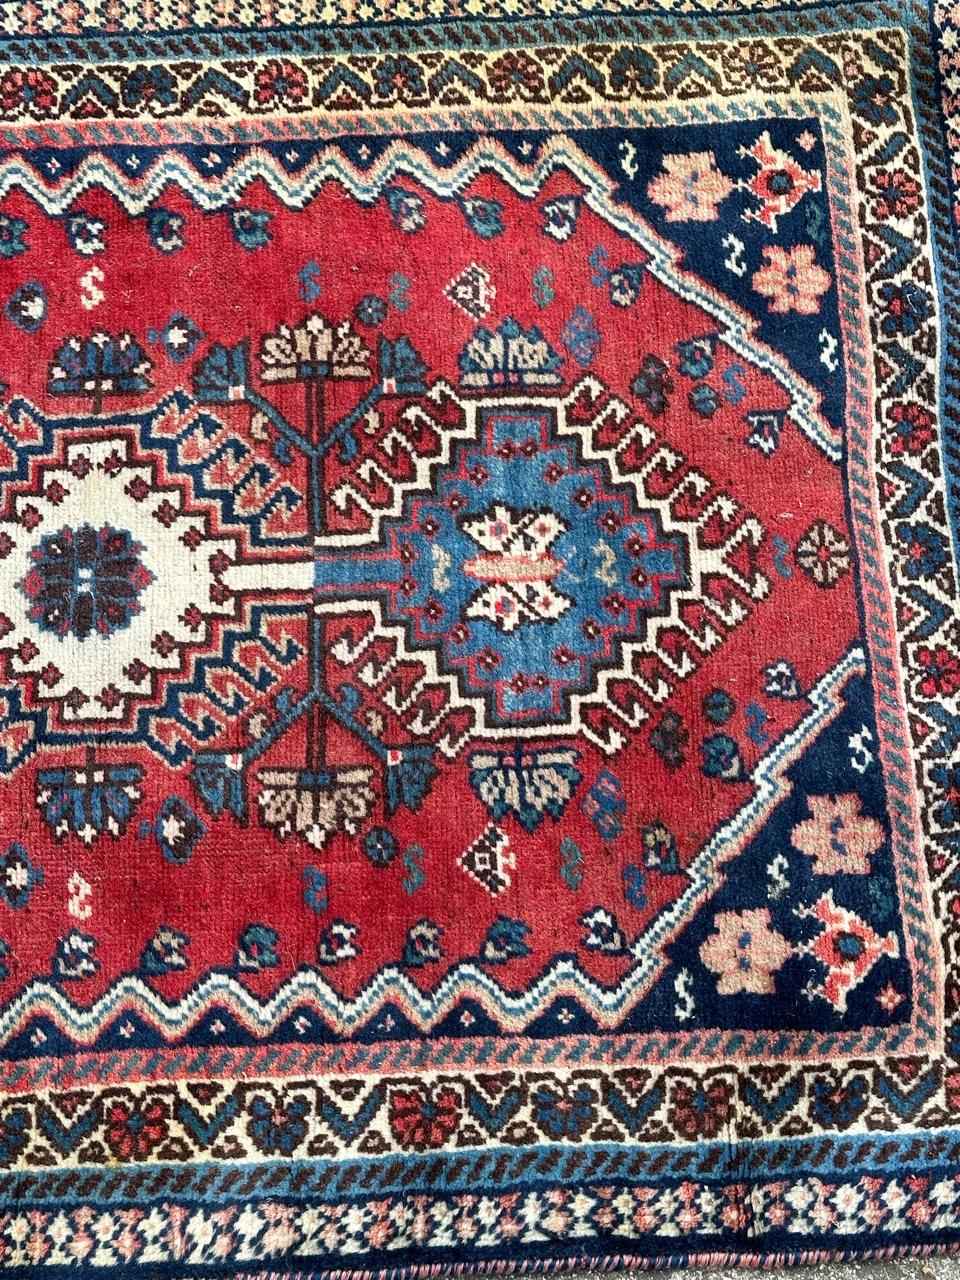 Joli tapis Yalameh du milieu du siècle avec un joli design géométrique et tribal et de belles couleurs avec un fond rouge, bleu, marron et blanc, entièrement noué à la main avec de la laine sur une base de laine. 

✨✨✨
